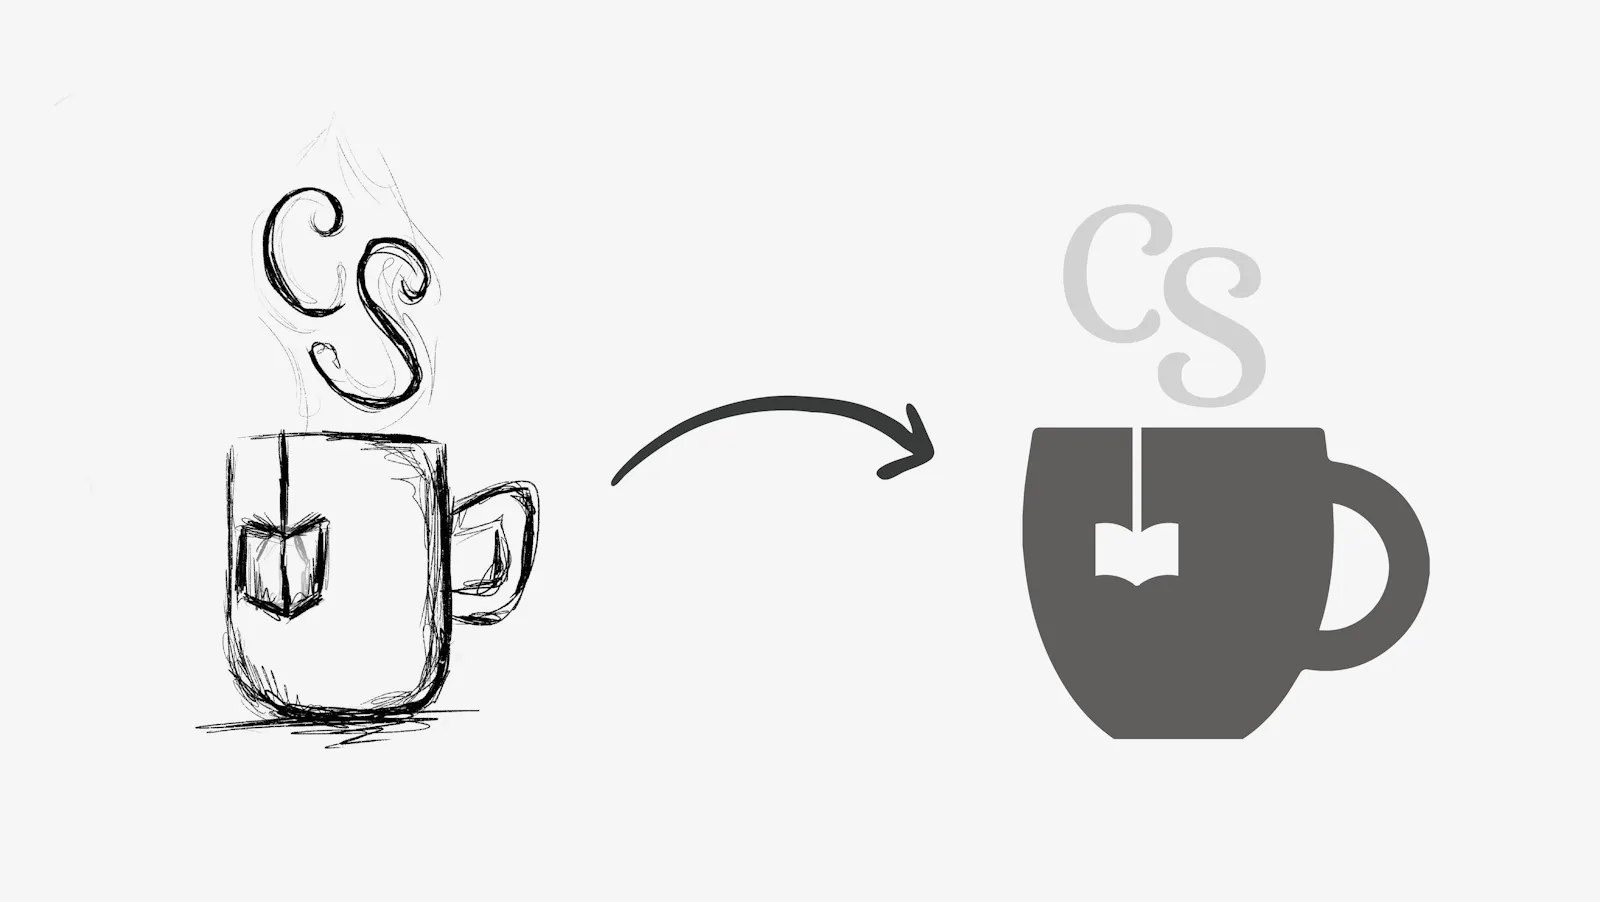 Skizze einer Teetasse aus dem ein Teeschildchen hängt. Aus der Tasse steigt Dampf, der aussieht wie die Buchstaben C und S. Ein Pfeil nach rechts und da dann das gleiche Motiv als Logo in dunkel- und hellgrau.